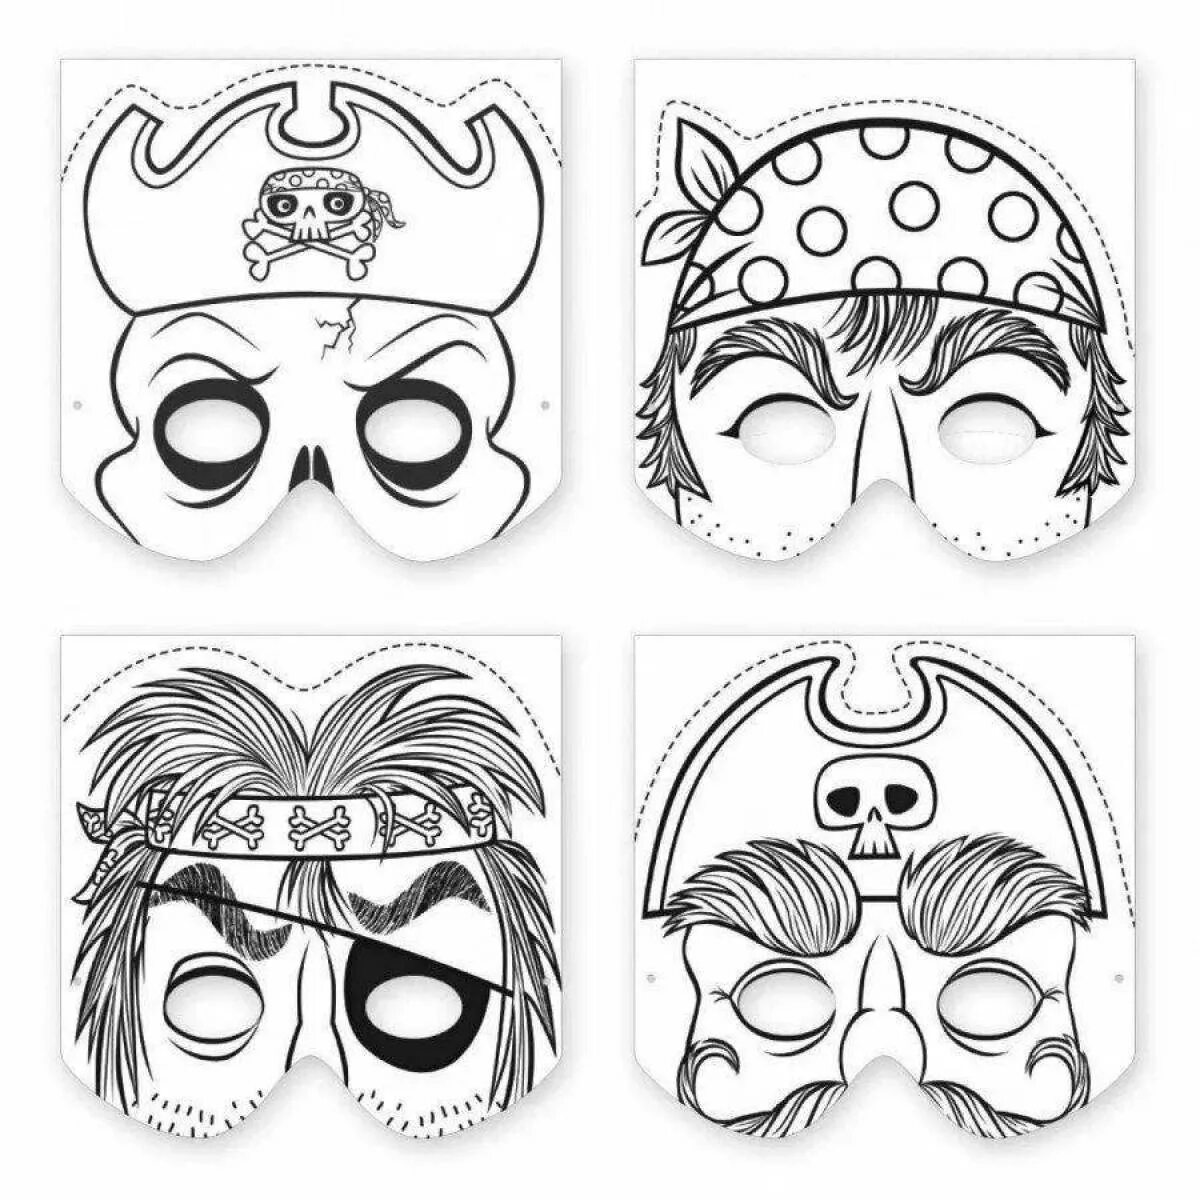 Маска мальчика распечатать. Маскарадные маски шаблоны для печати. Трафареты карнавальных масок для лица. Карнавальные маски шаблоны для печати. Трафарет - маска.